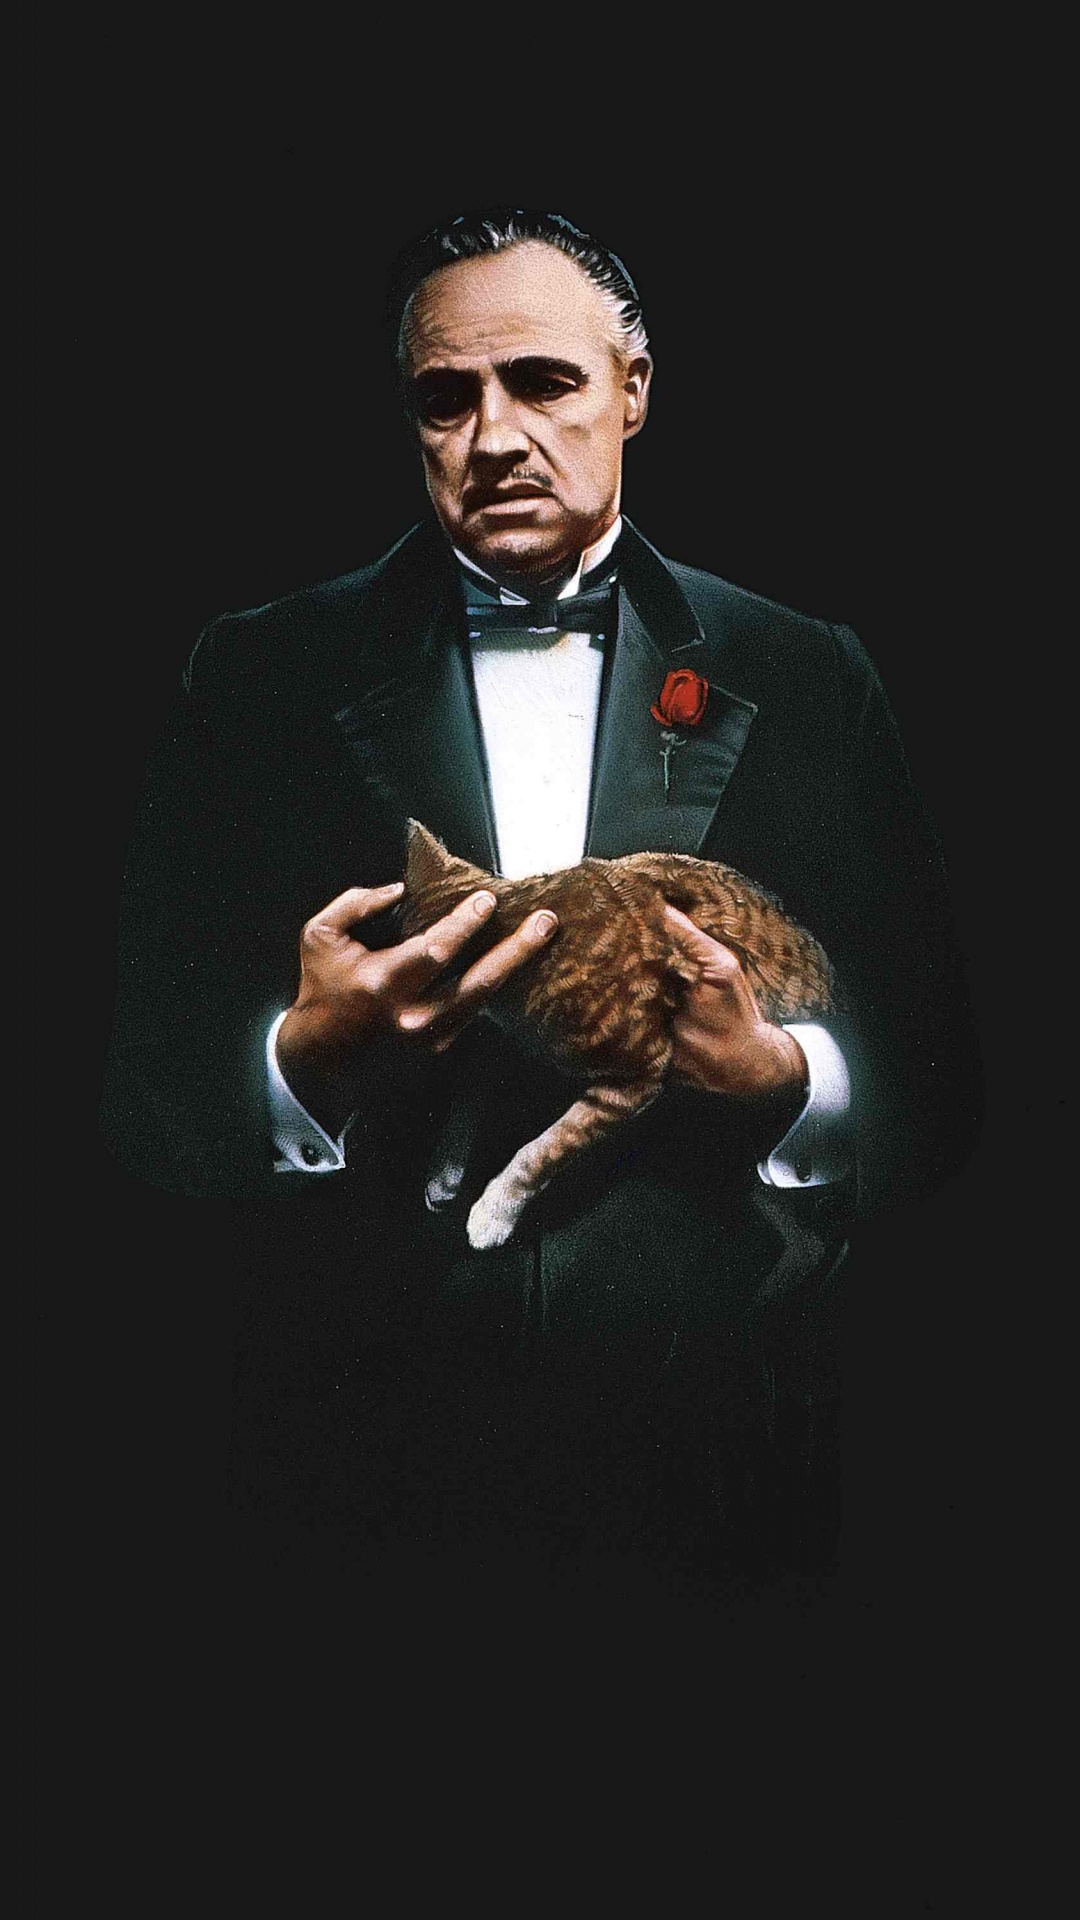 Godfather Don Corleone Art, al Pacino, The Godfather, Michael Corleone, Vito Corleone. Wallpaper in 1080x1920 Resolution